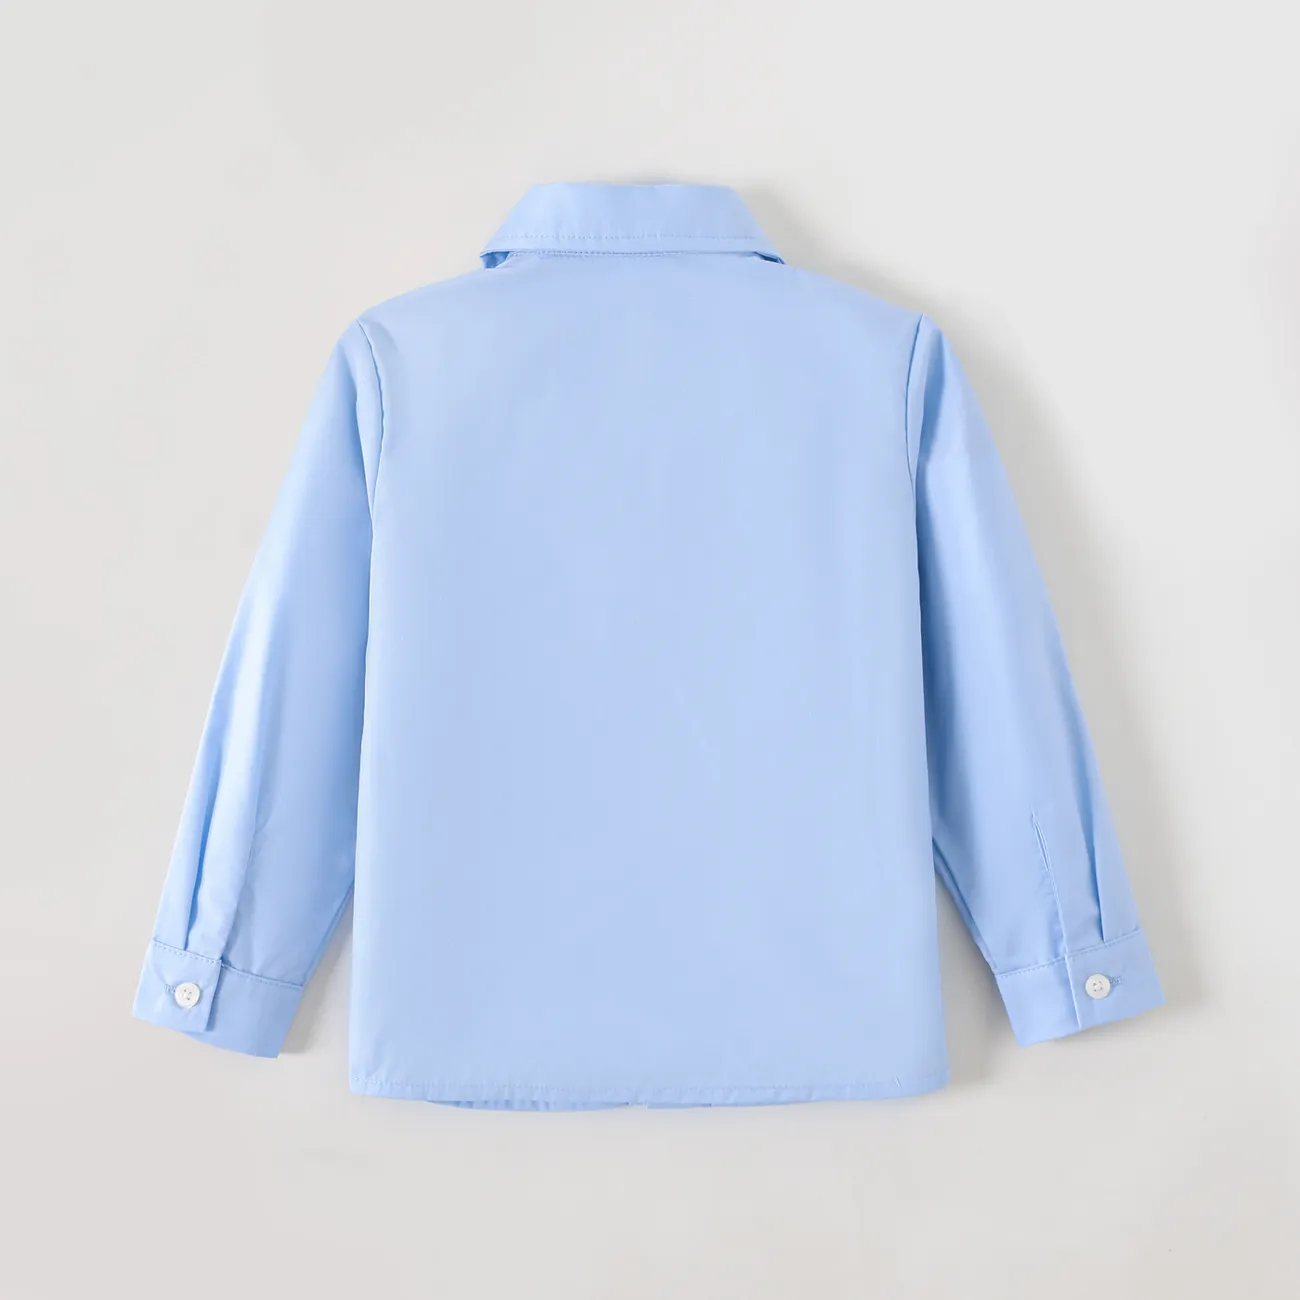 Toddler Boy/Girl School Uniform Chemise à manches longues Bleu big image 1